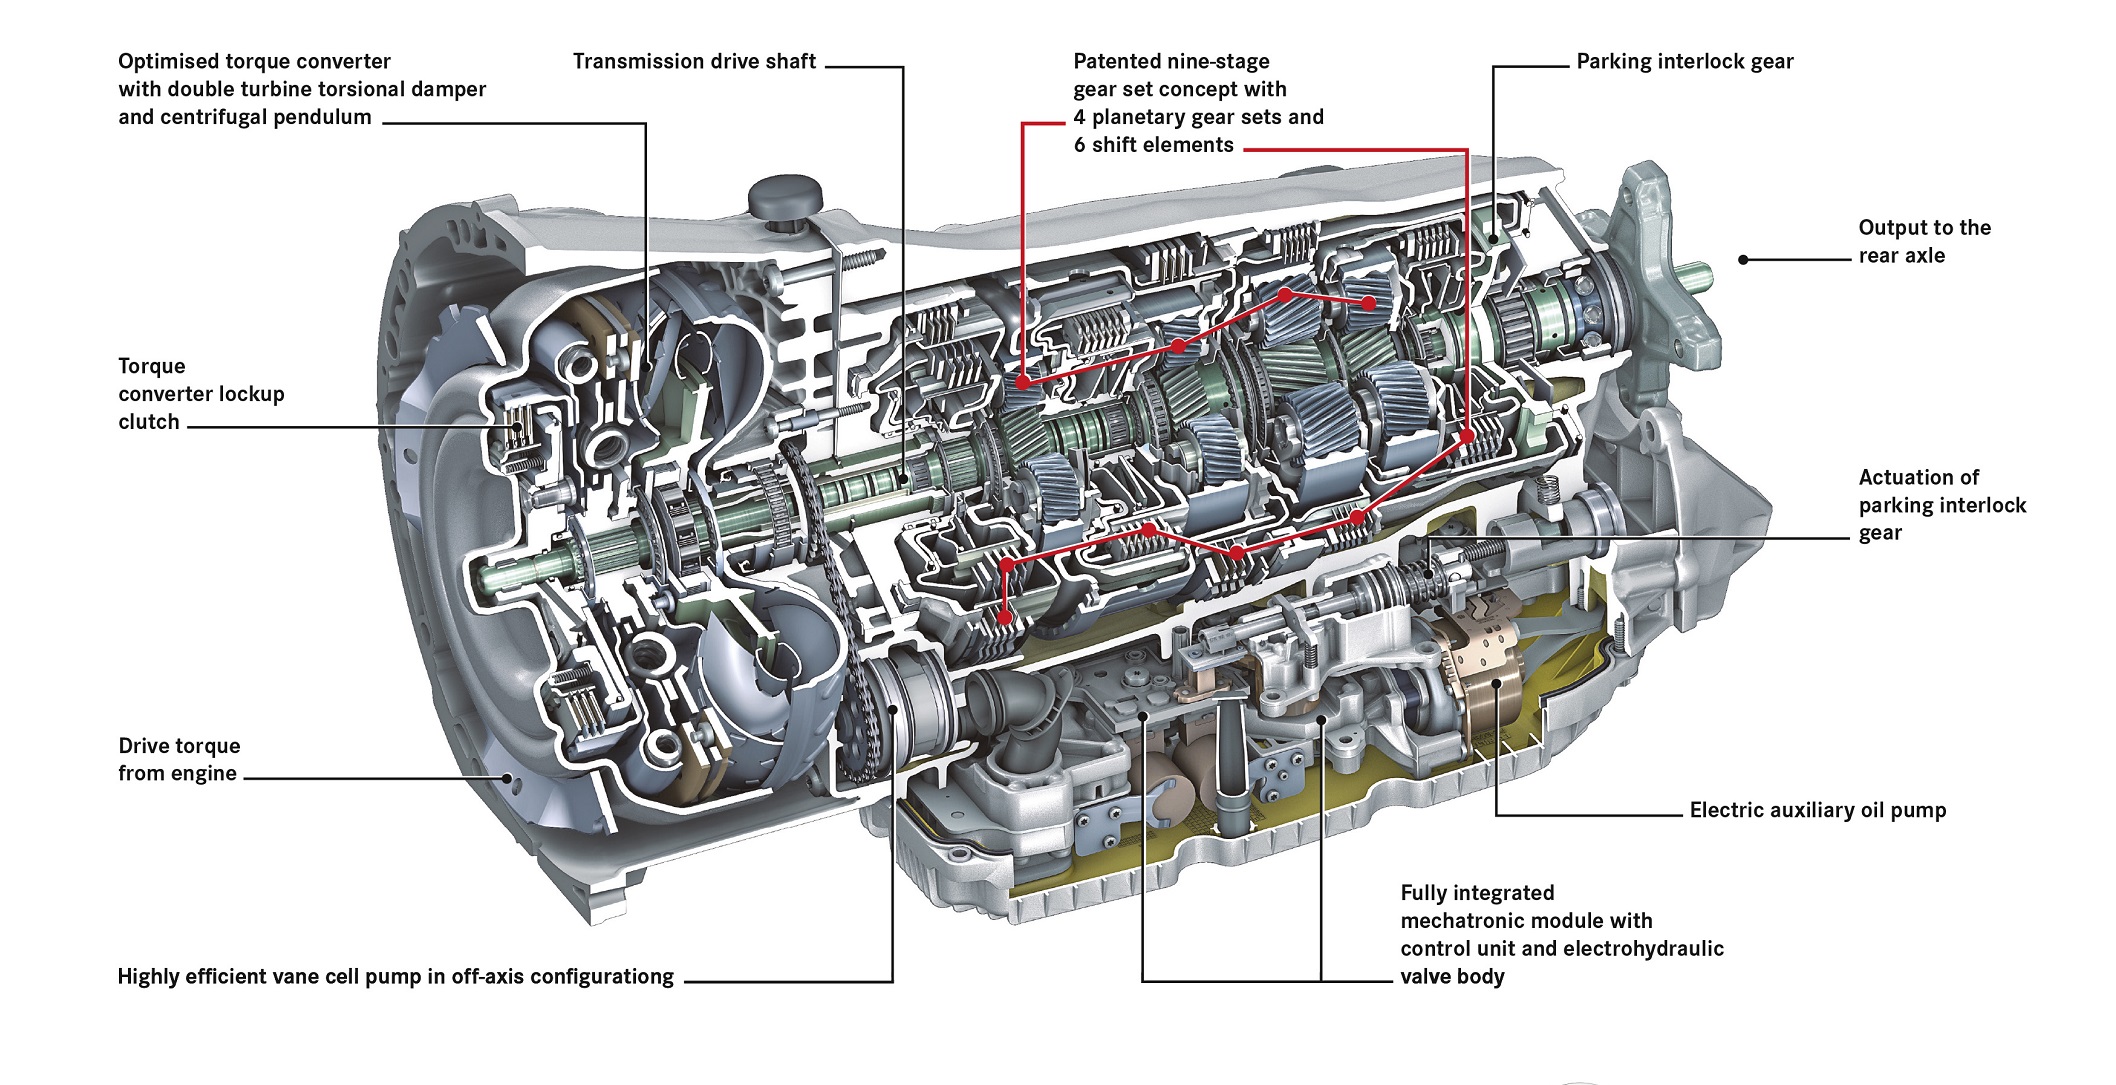 cherche a graisser rotule de bva  Design-of-the-Mercedes-Benz-automatic-transmission-9G-TRONIC